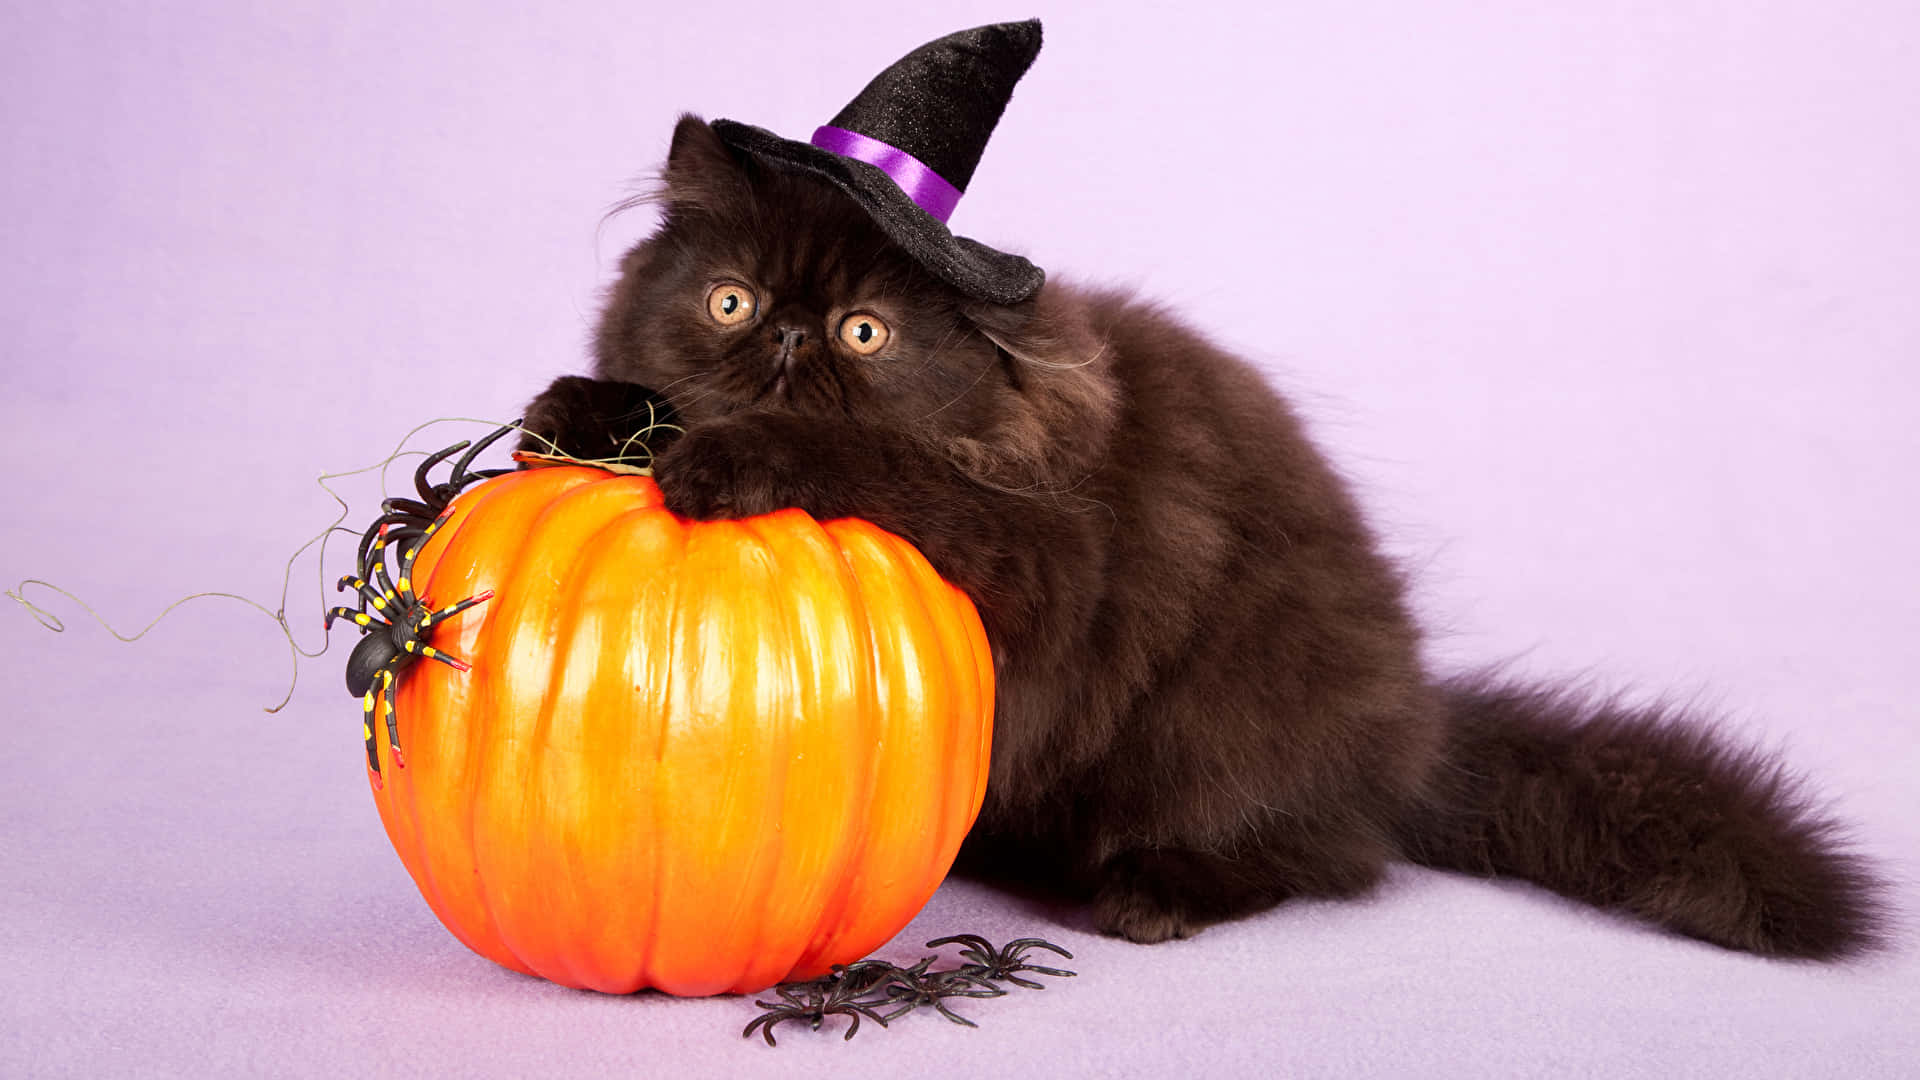 Fondode Pantalla De Halloween Con Un Gato De 1920 X 1080. Fondo de pantalla